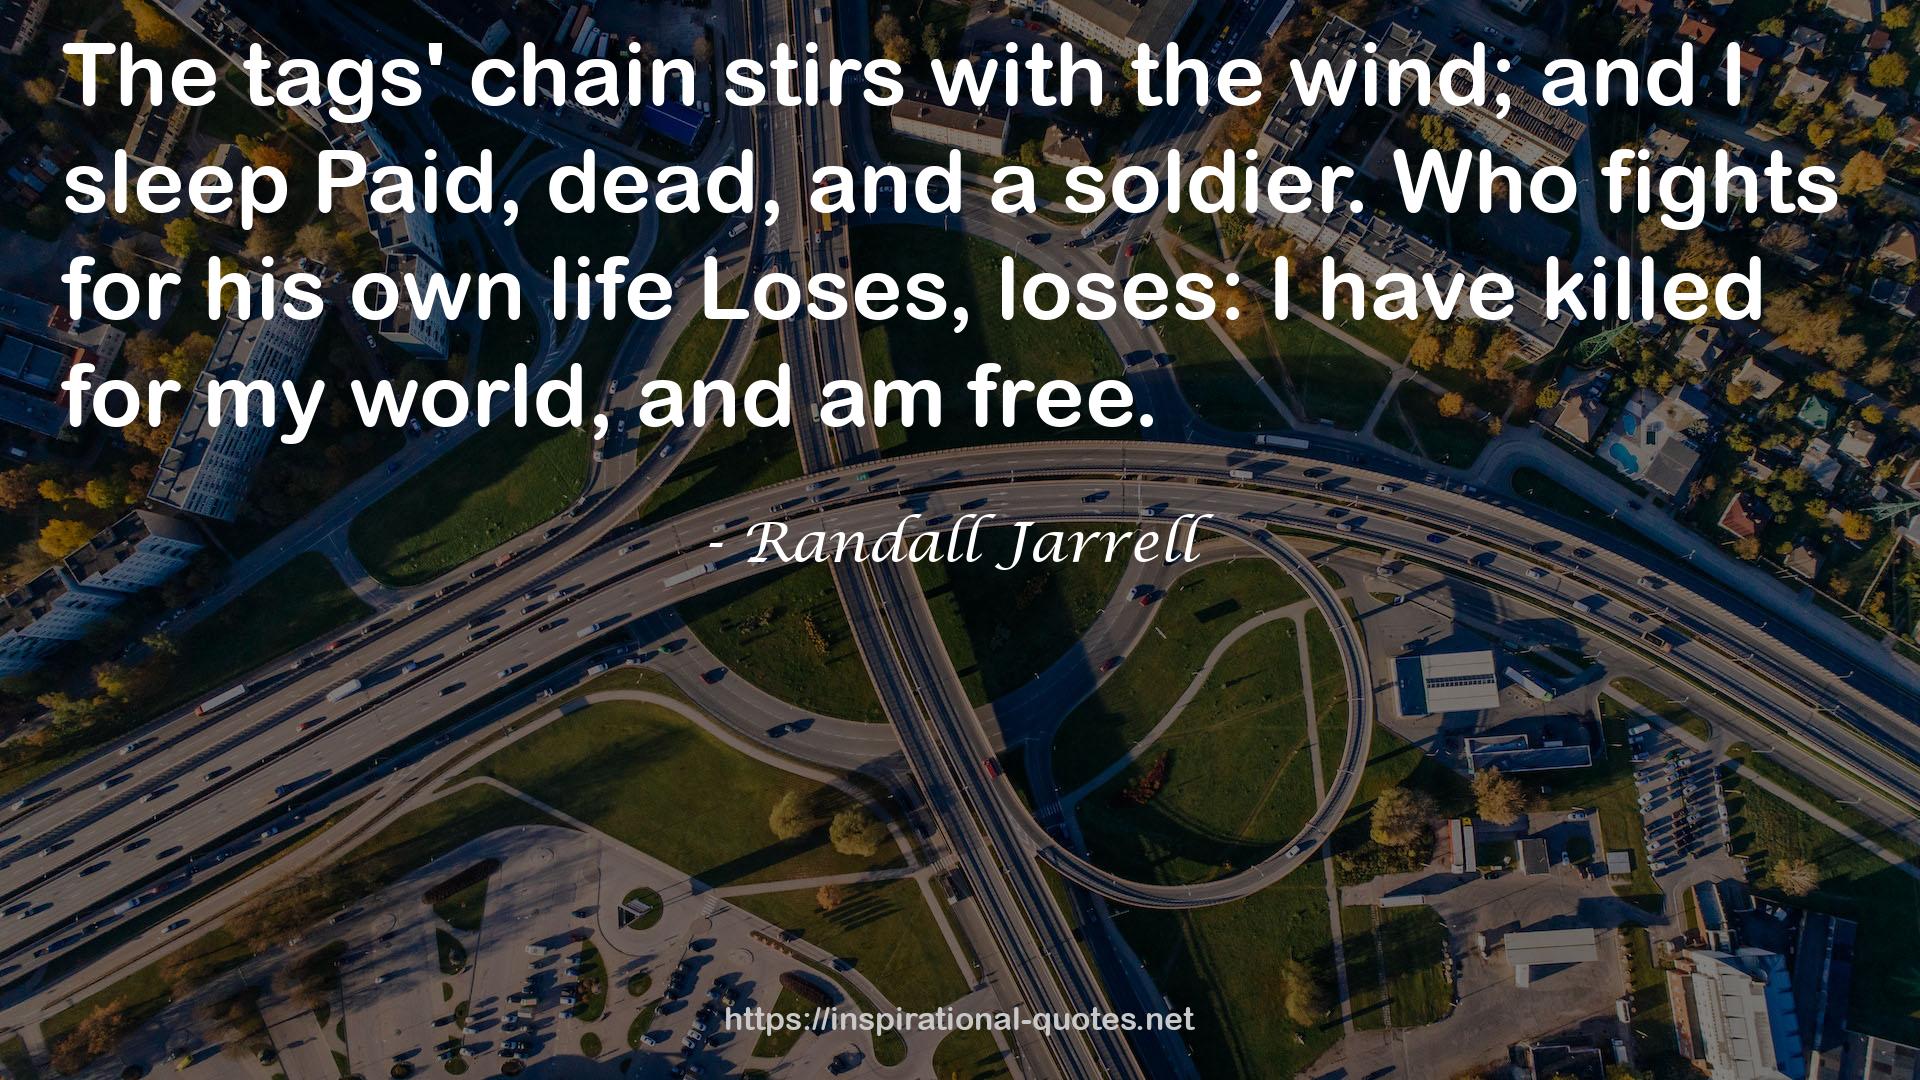 Randall Jarrell QUOTES